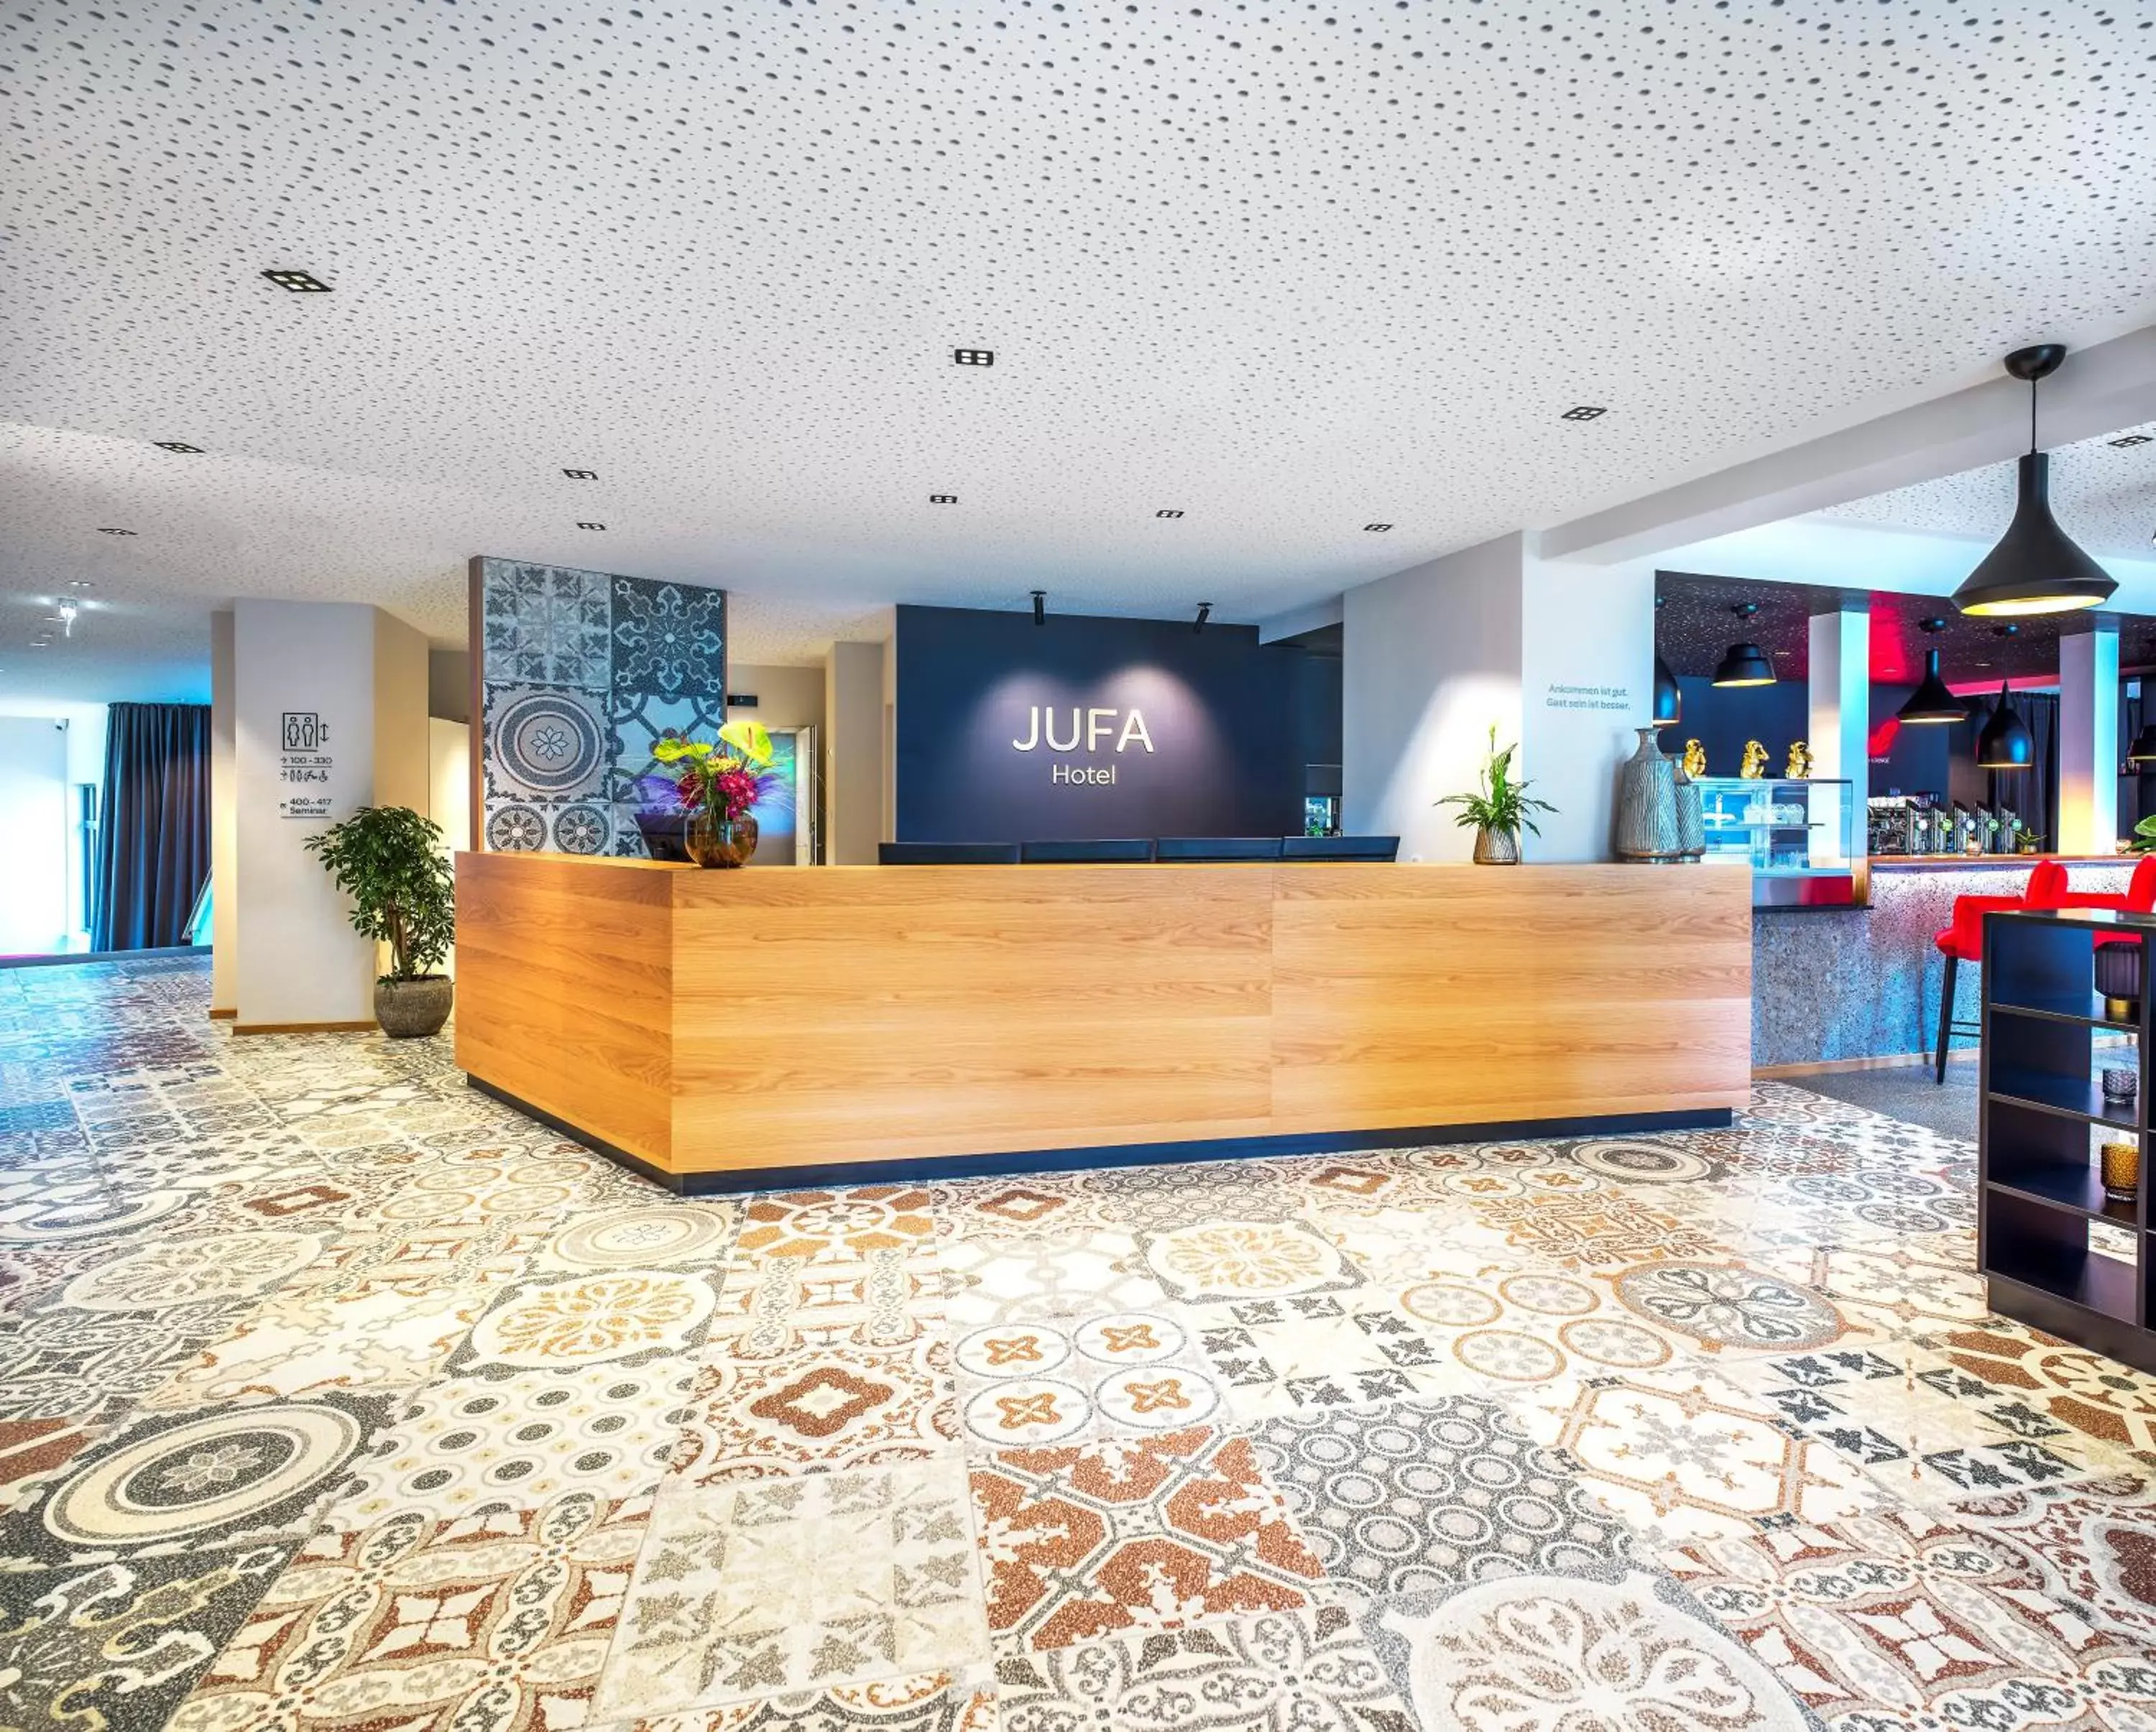 Lobby or reception, Lobby/Reception in JUFA Hotel Salzburg City